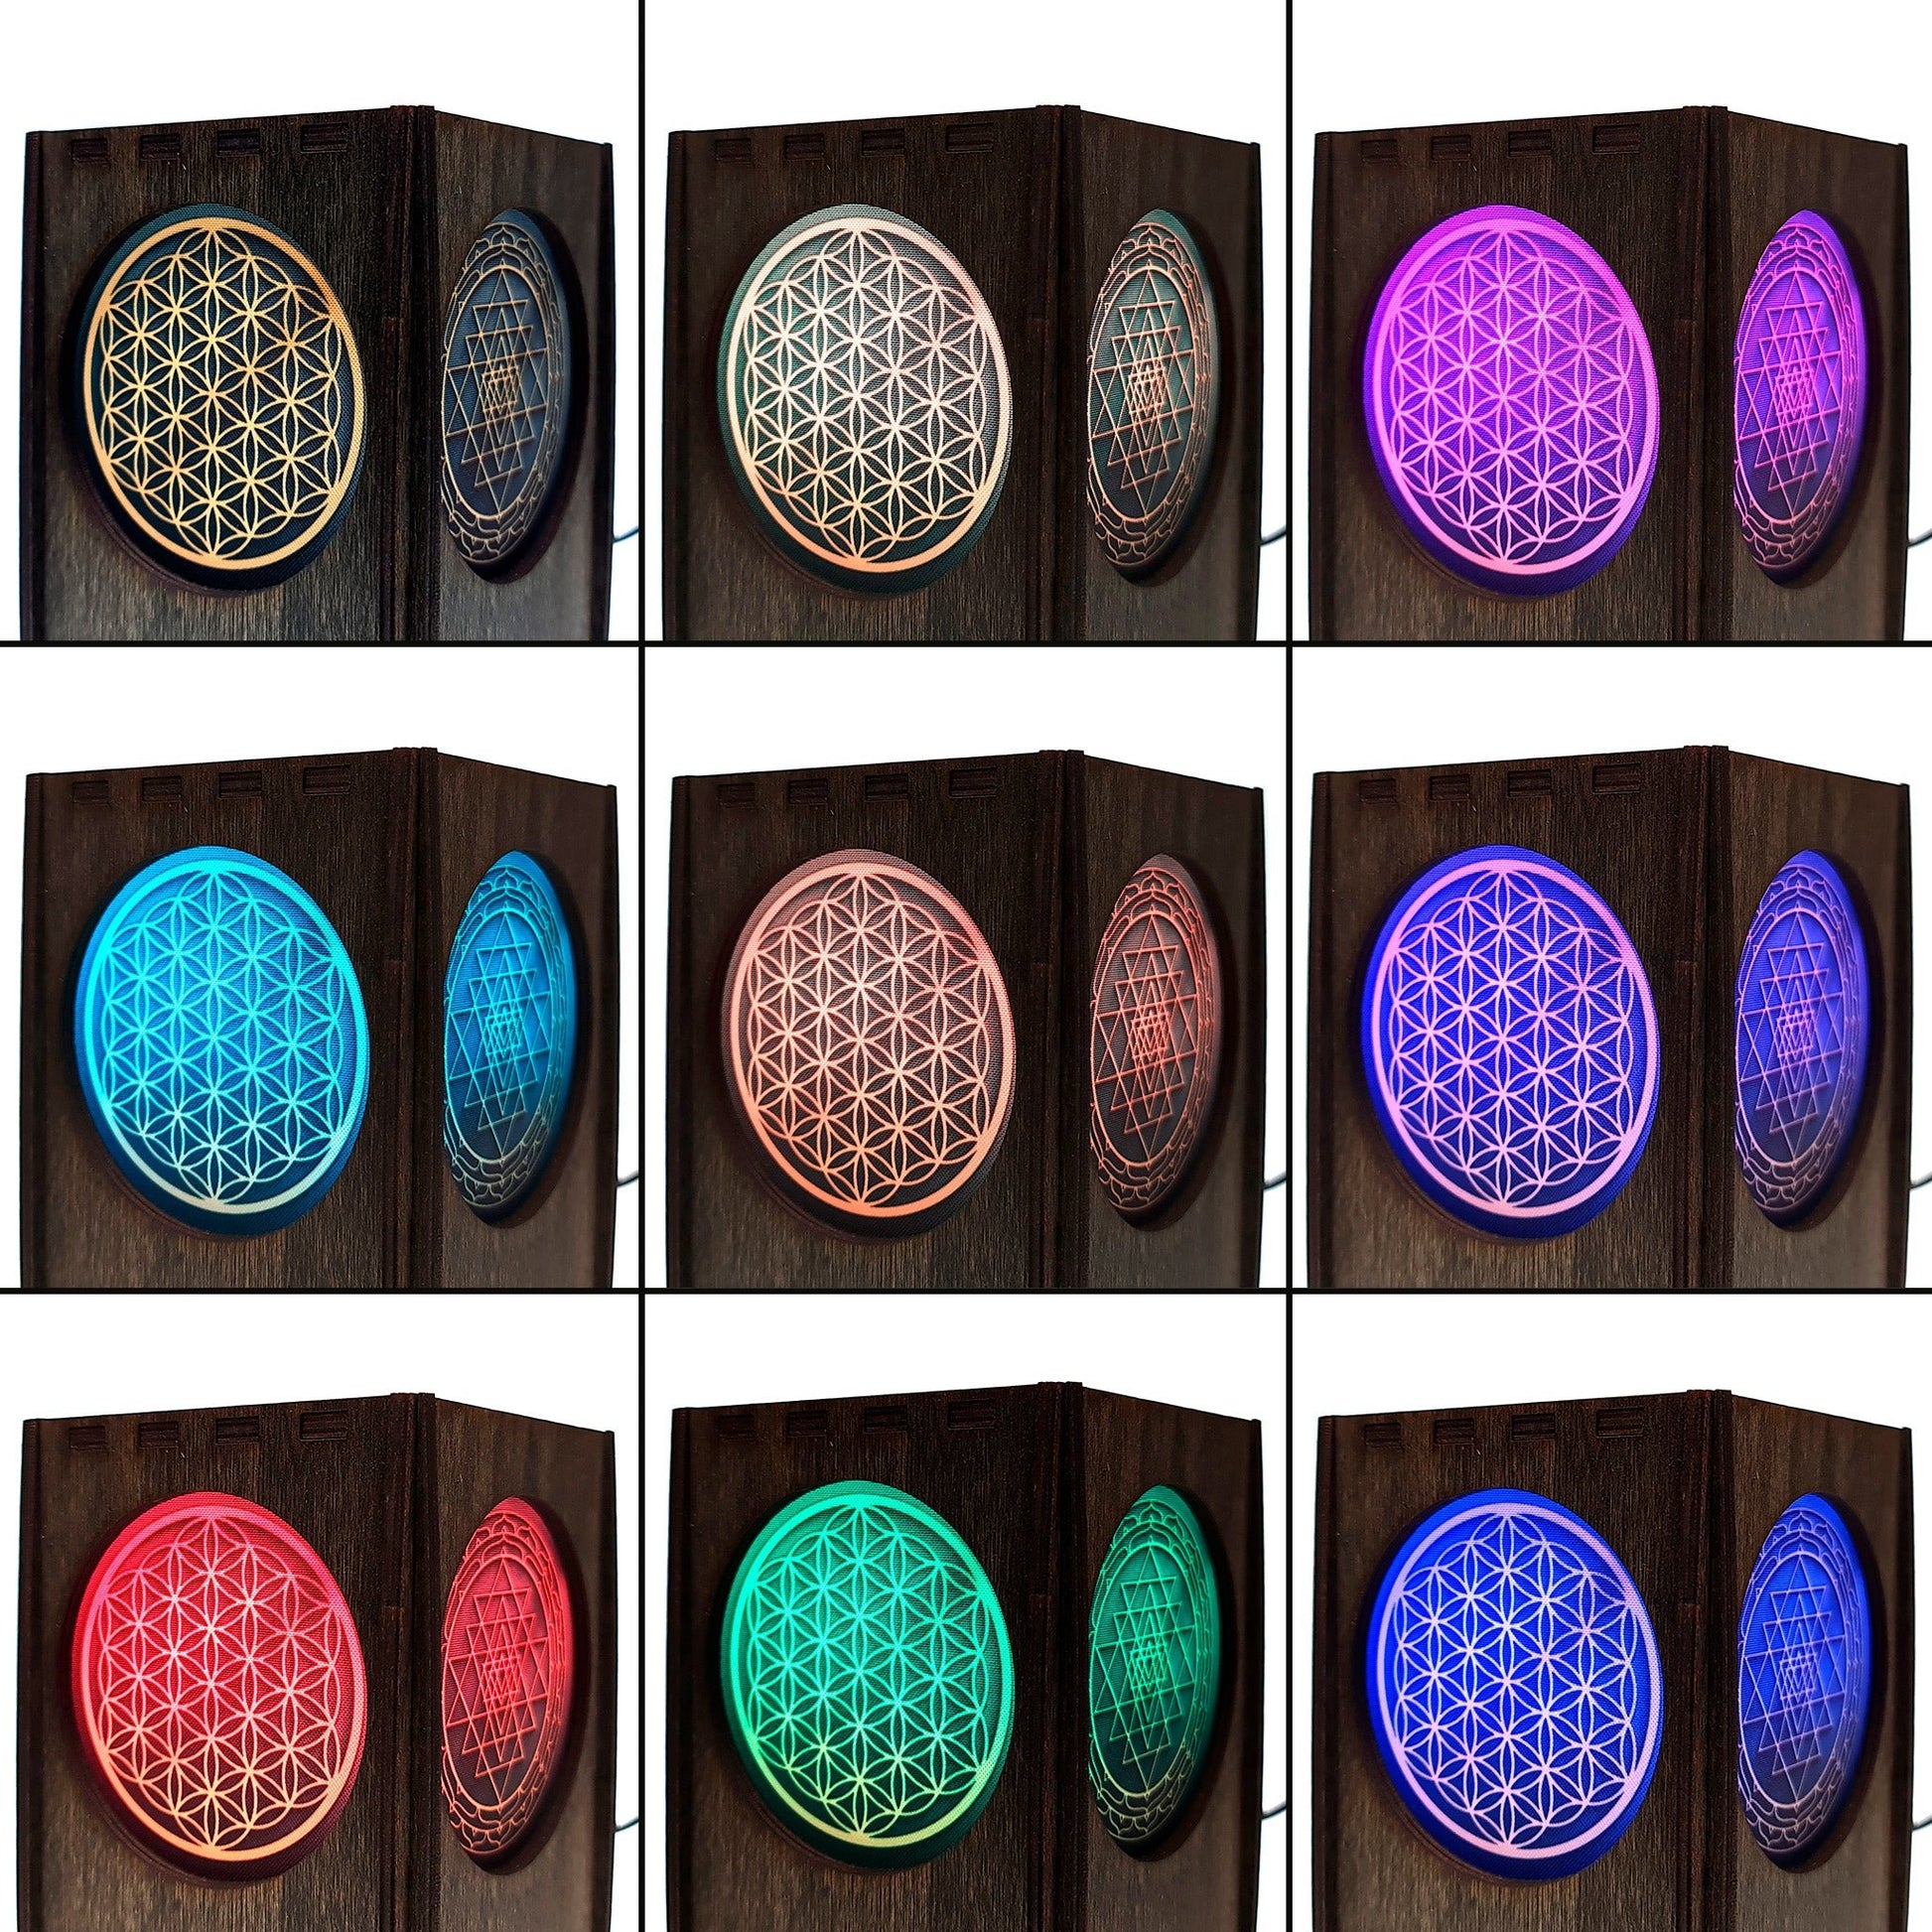 Tischlampe aus Holz mit 3 Symbolen - Nanino Design Onlineshop -